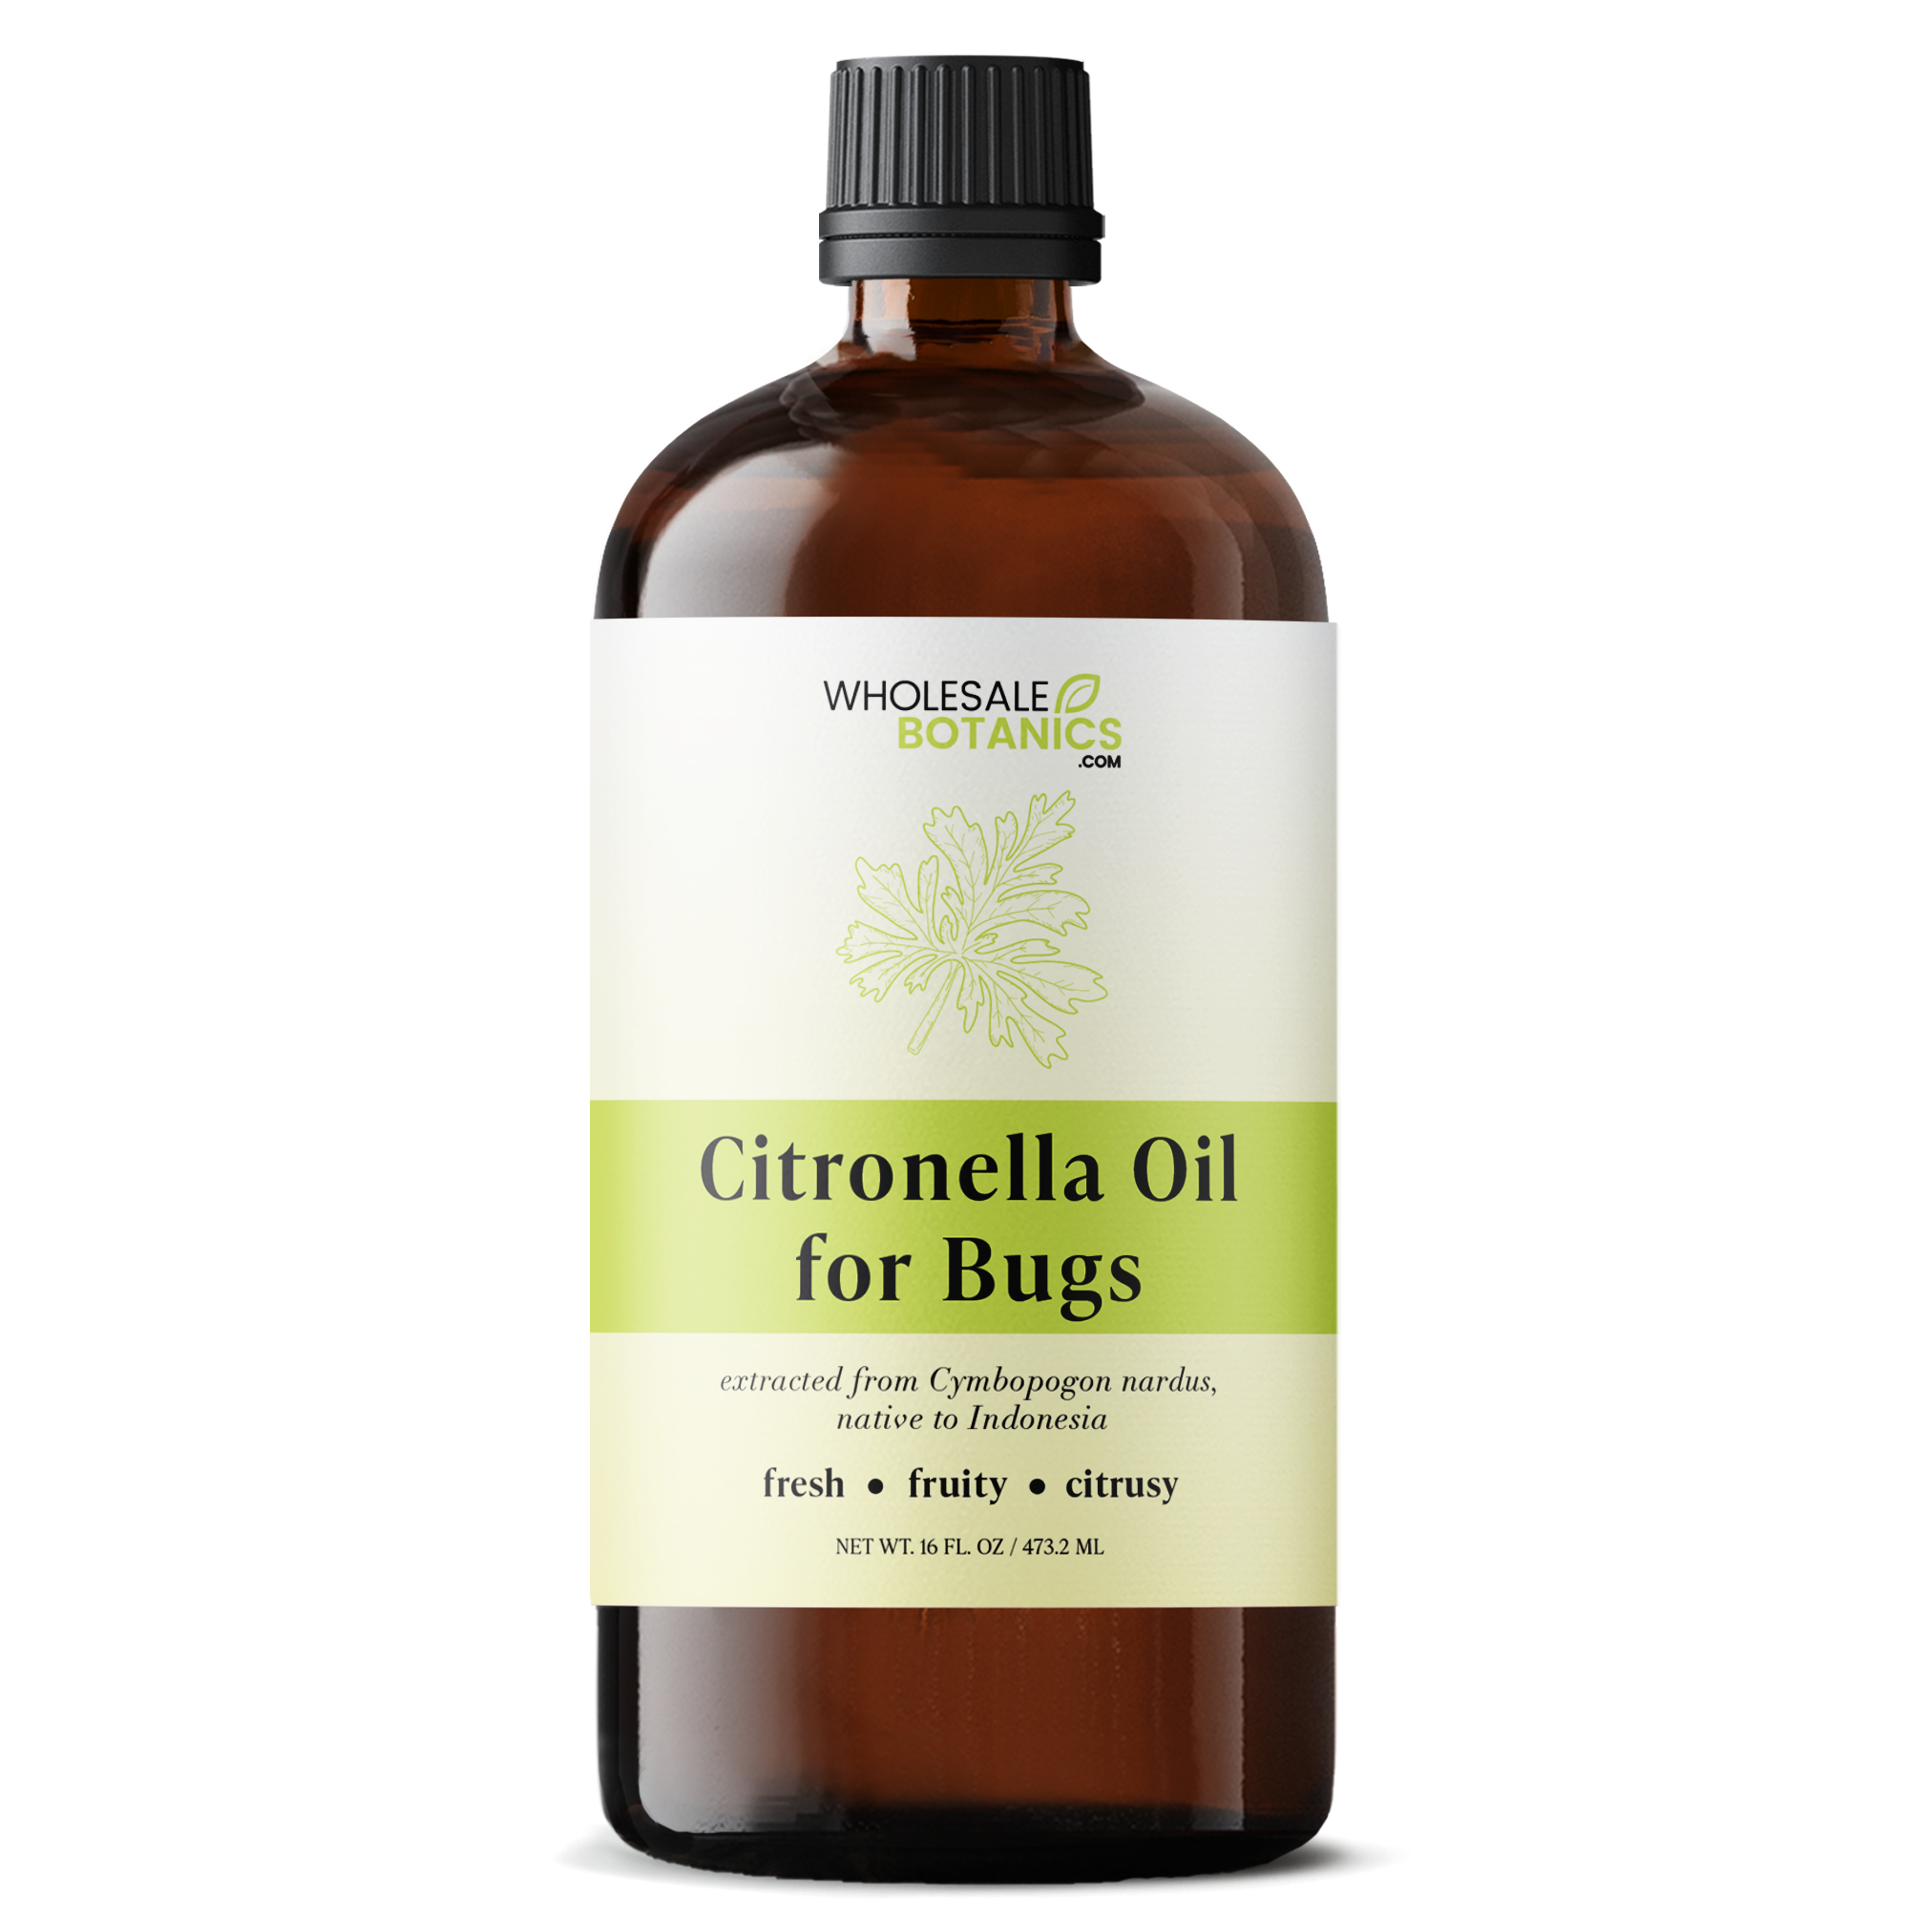 Citronella Oil for Bugs